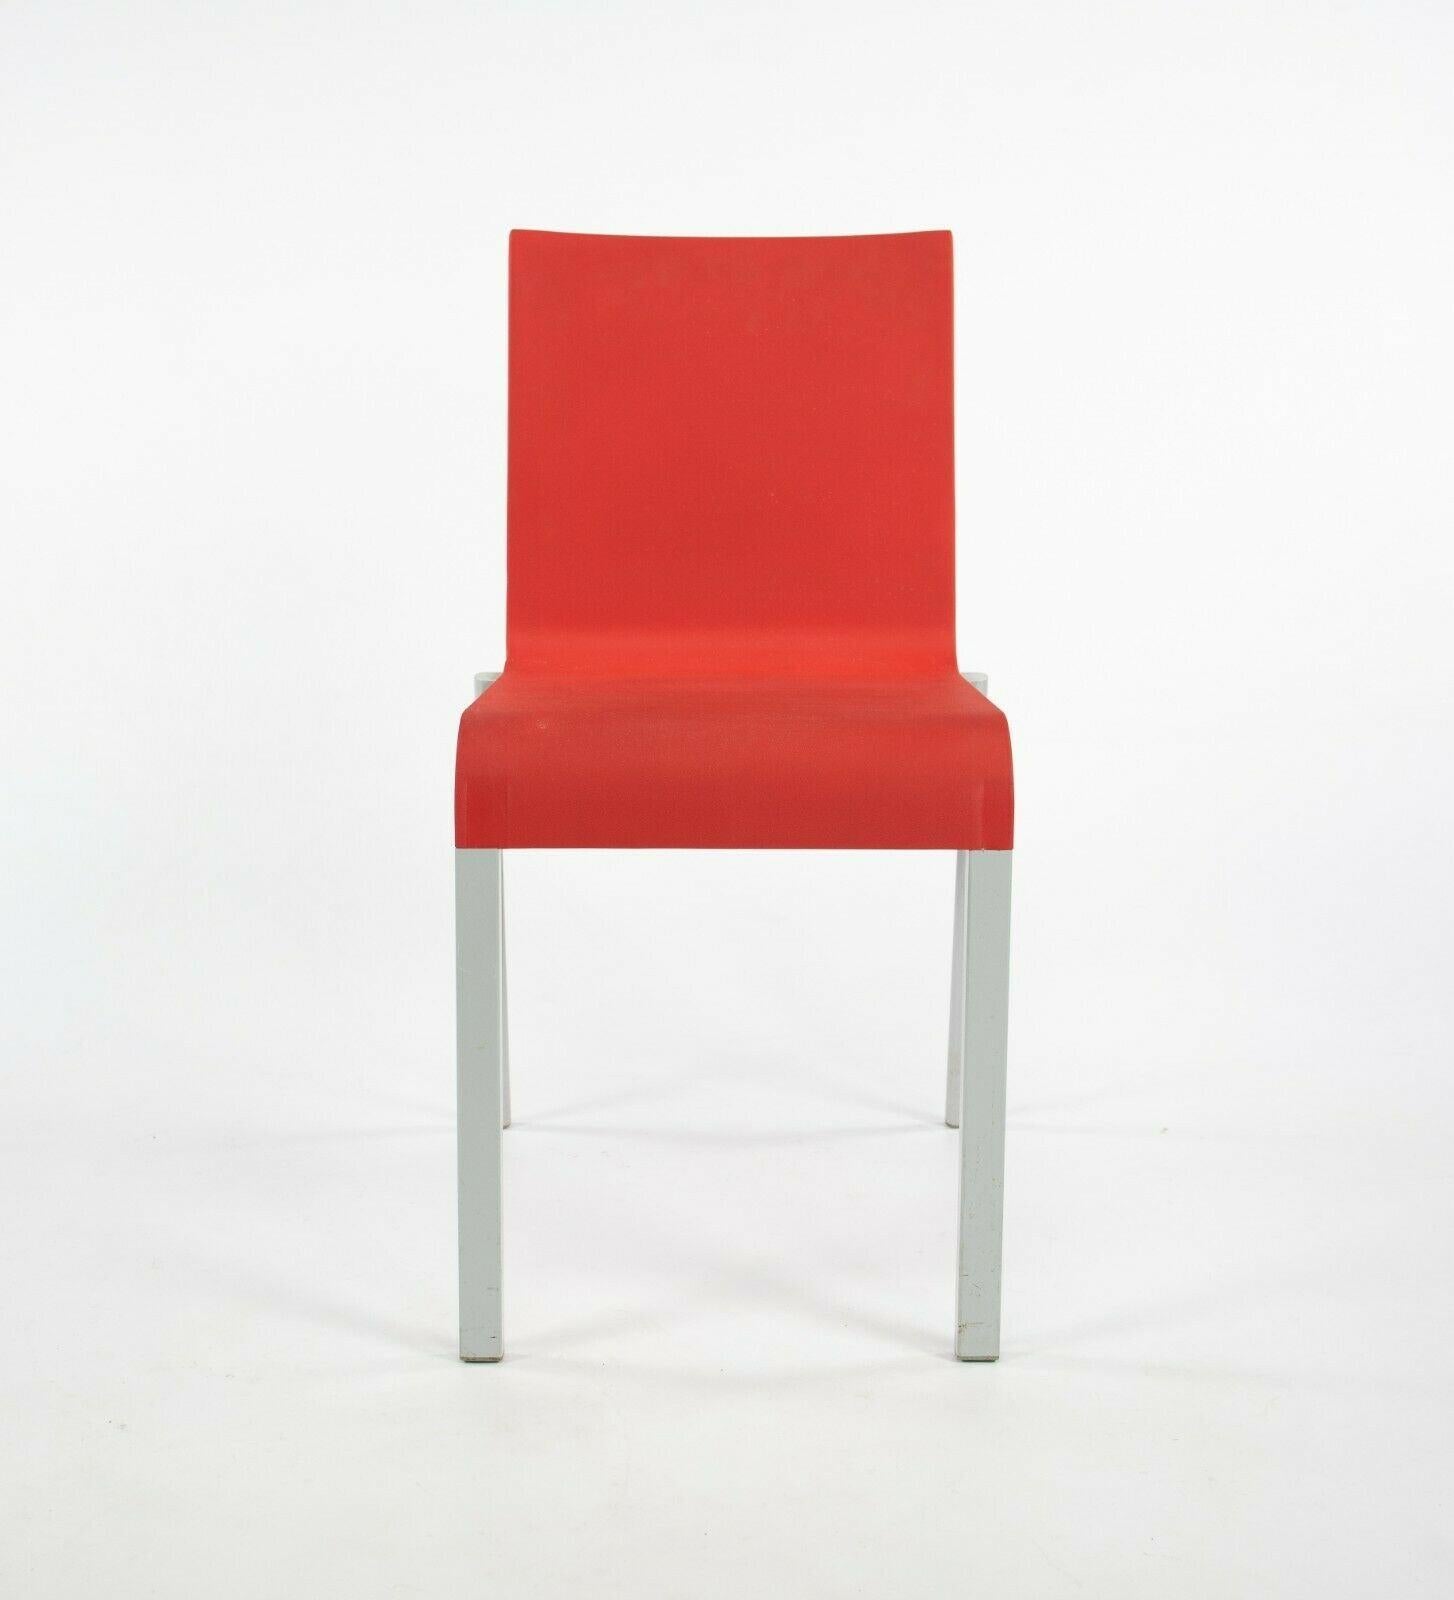 Les chaises empilables rouges Vitra .03 de Maarten Van Severen sont proposées à la vente en plusieurs exemplaires (nous en avons plusieurs disponibles, mais le prix indiqué est celui de chaque chaise). Il s'agit de la première chaise industrielle de